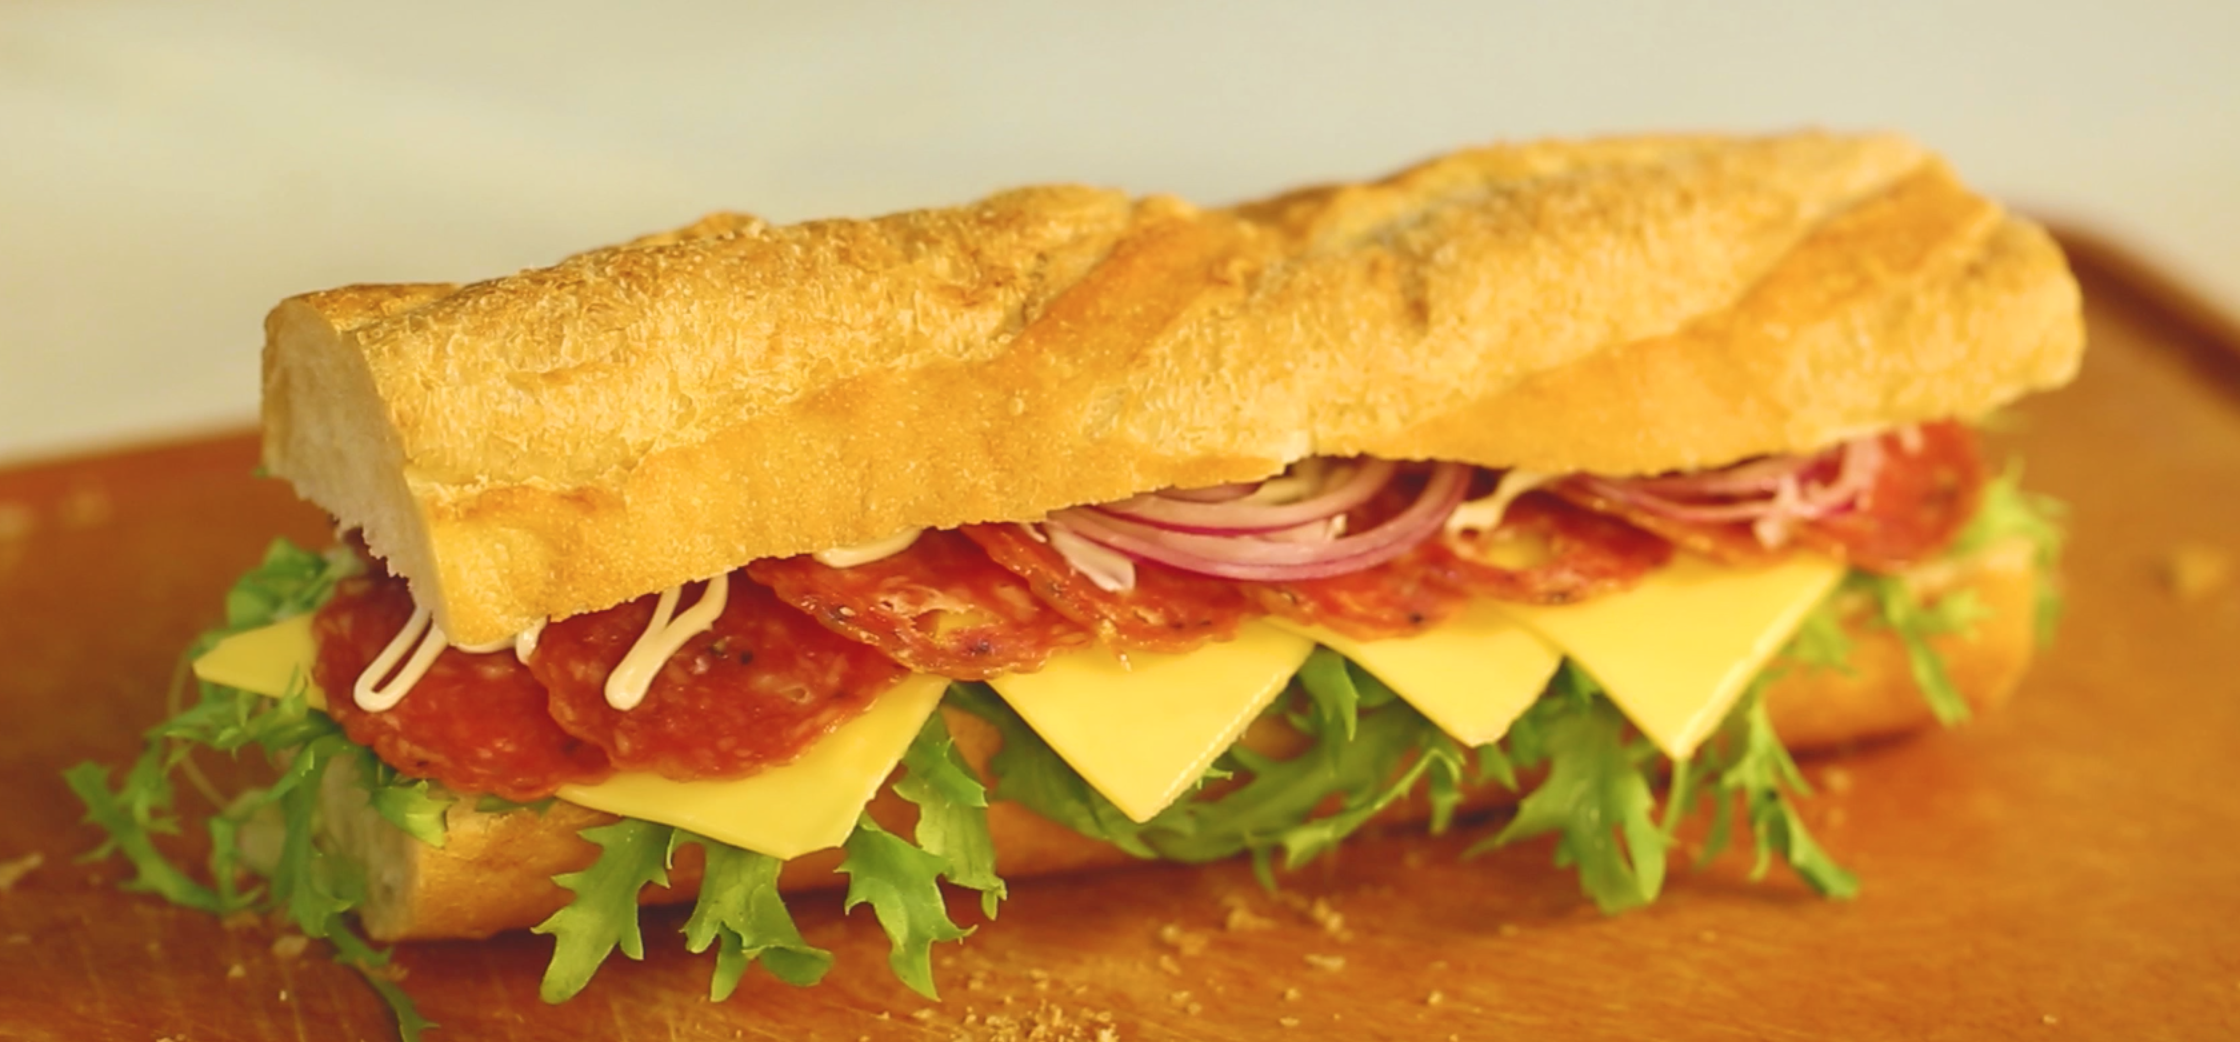 面包“芝心”的拥抱——法式芝心三明治&美式超满足芝心汉堡